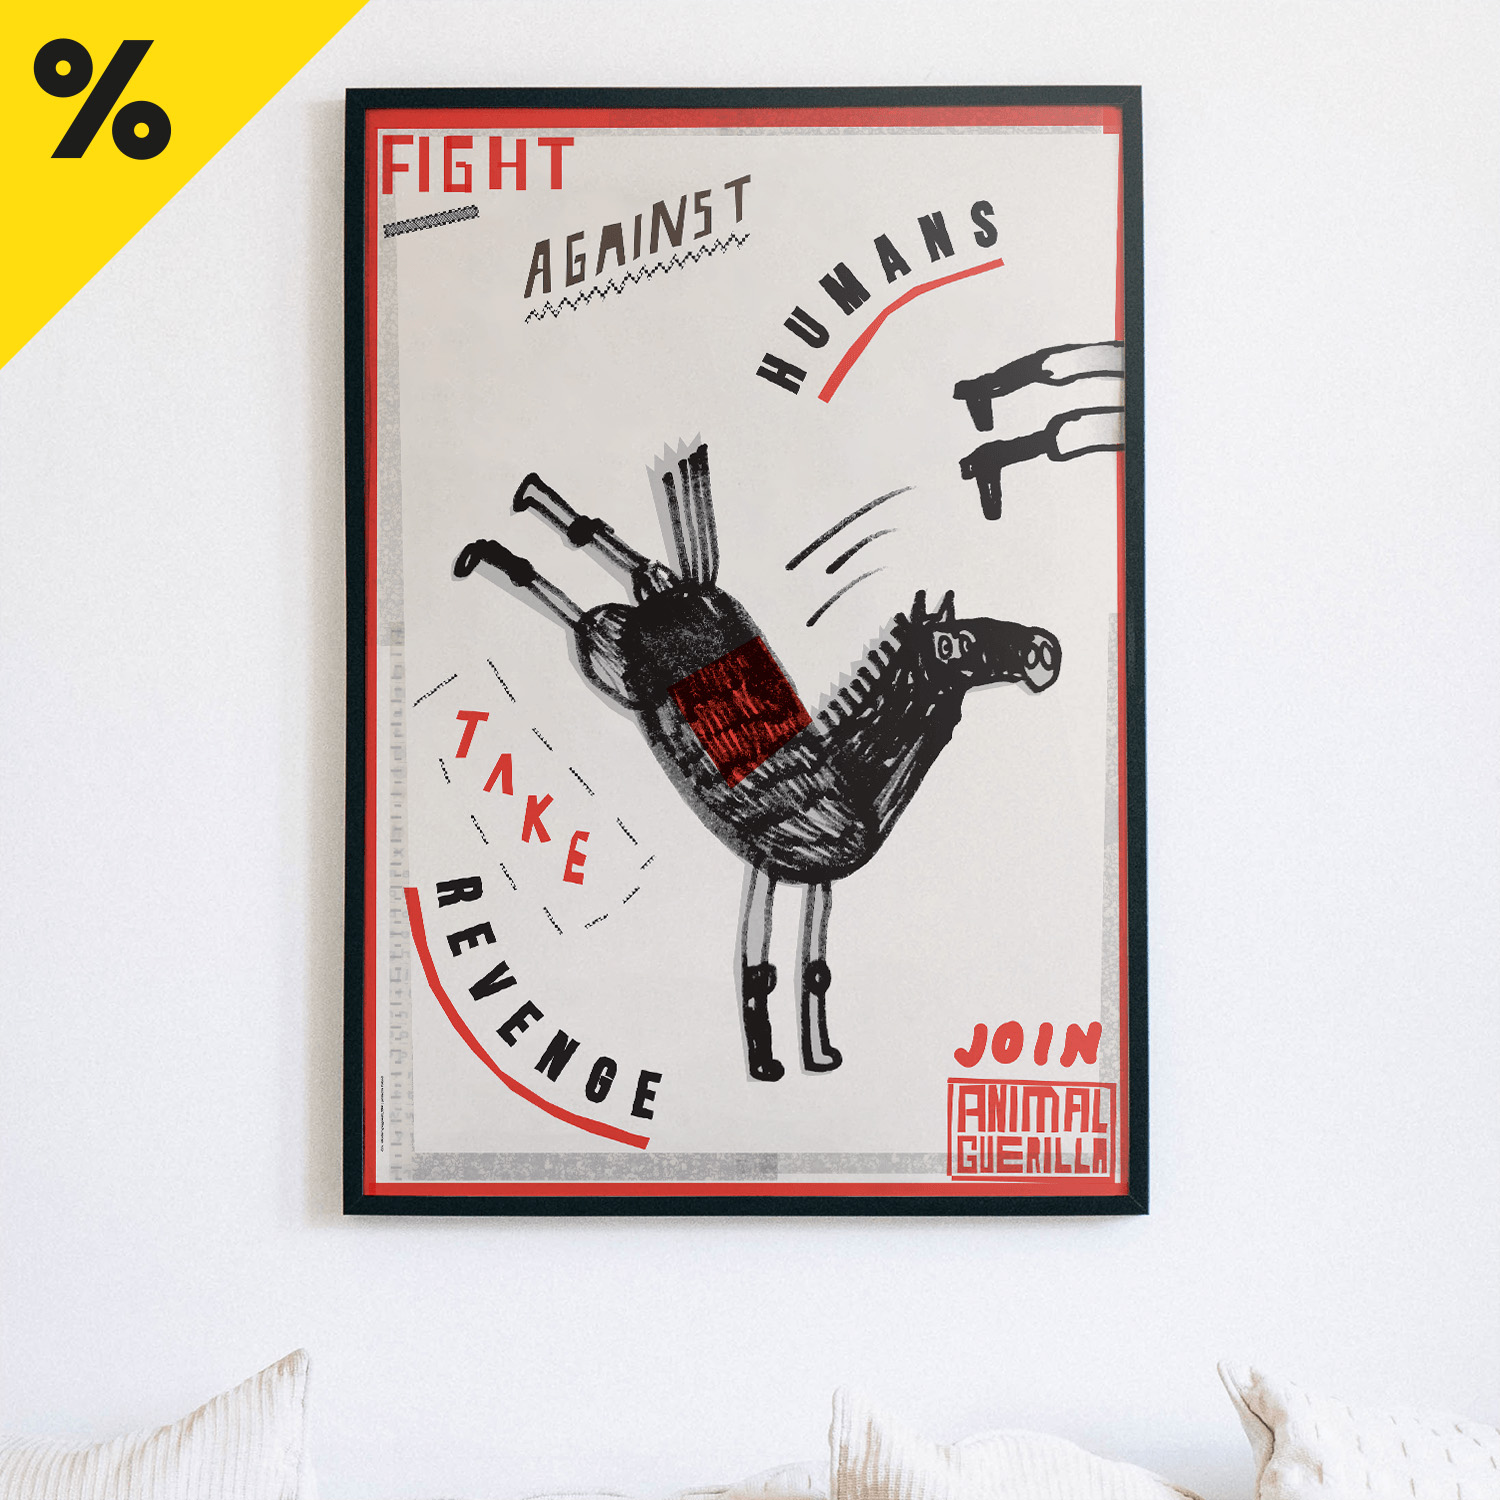 Plakat: "Animal guerilla"